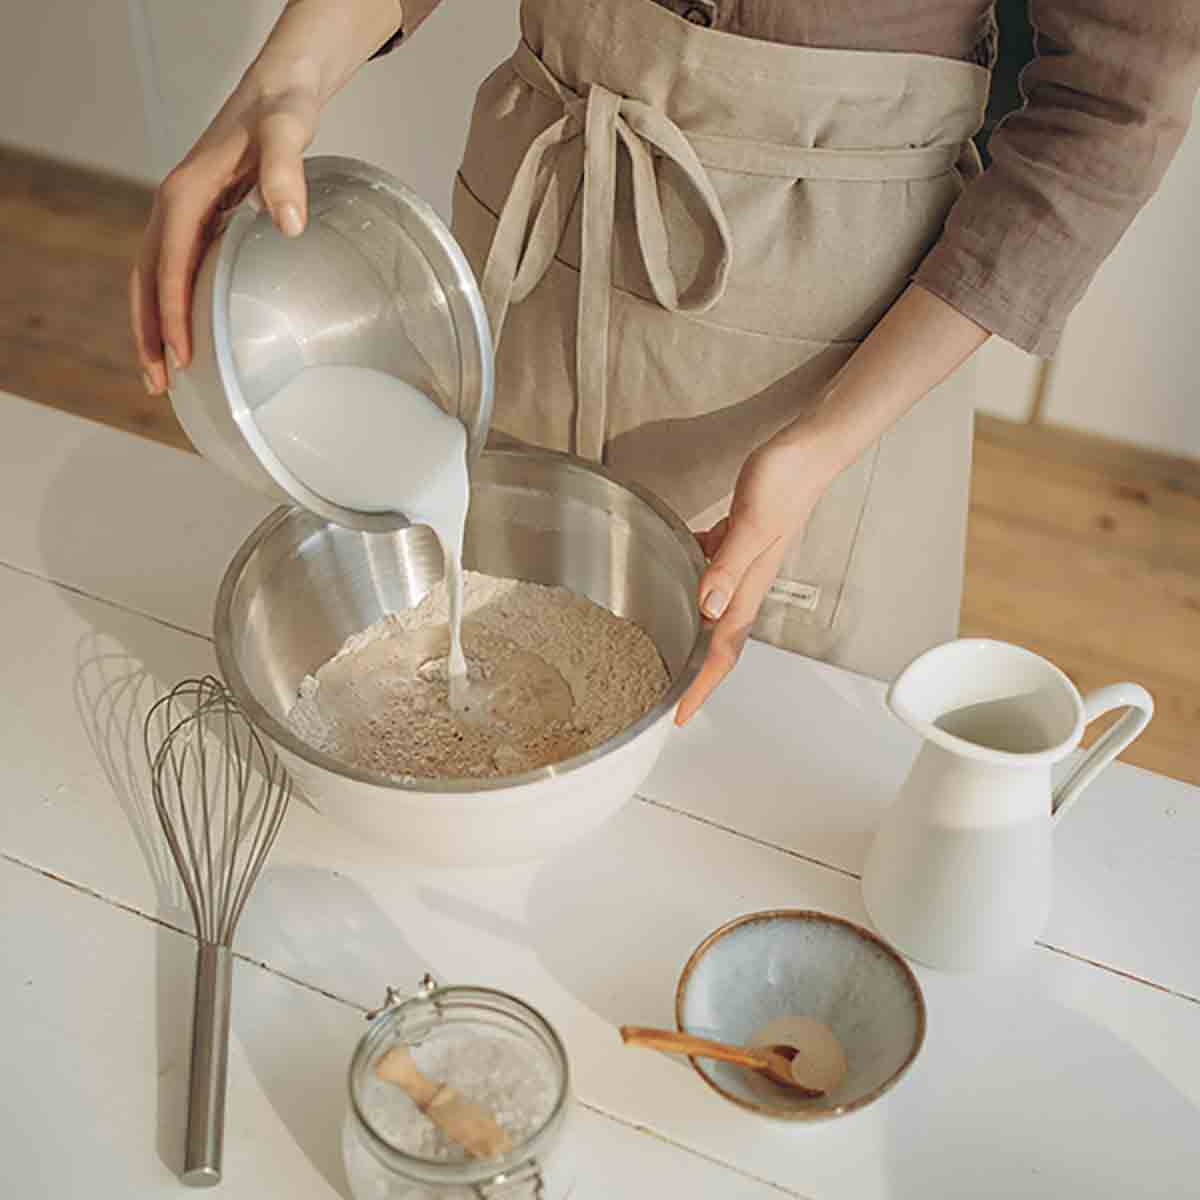 A woman baking